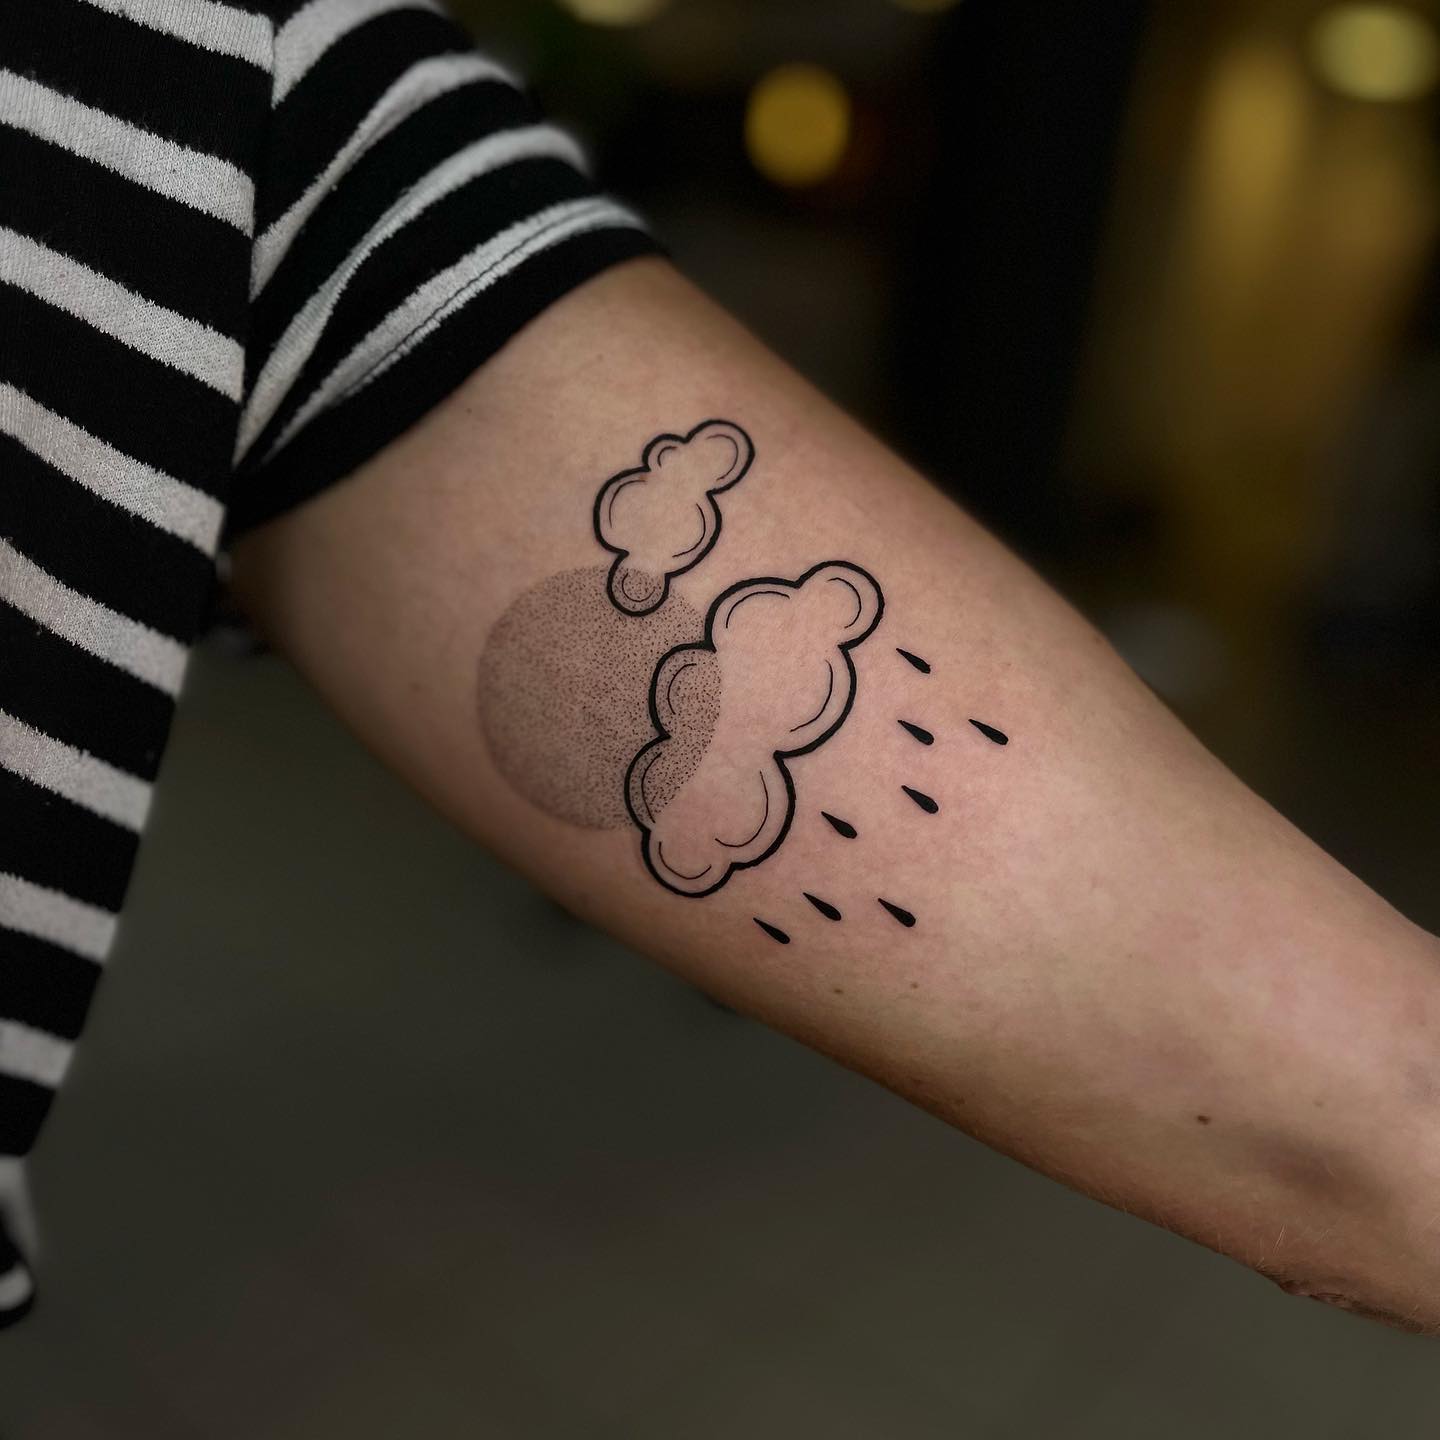 Rain tattoo design by pauli.tattoo